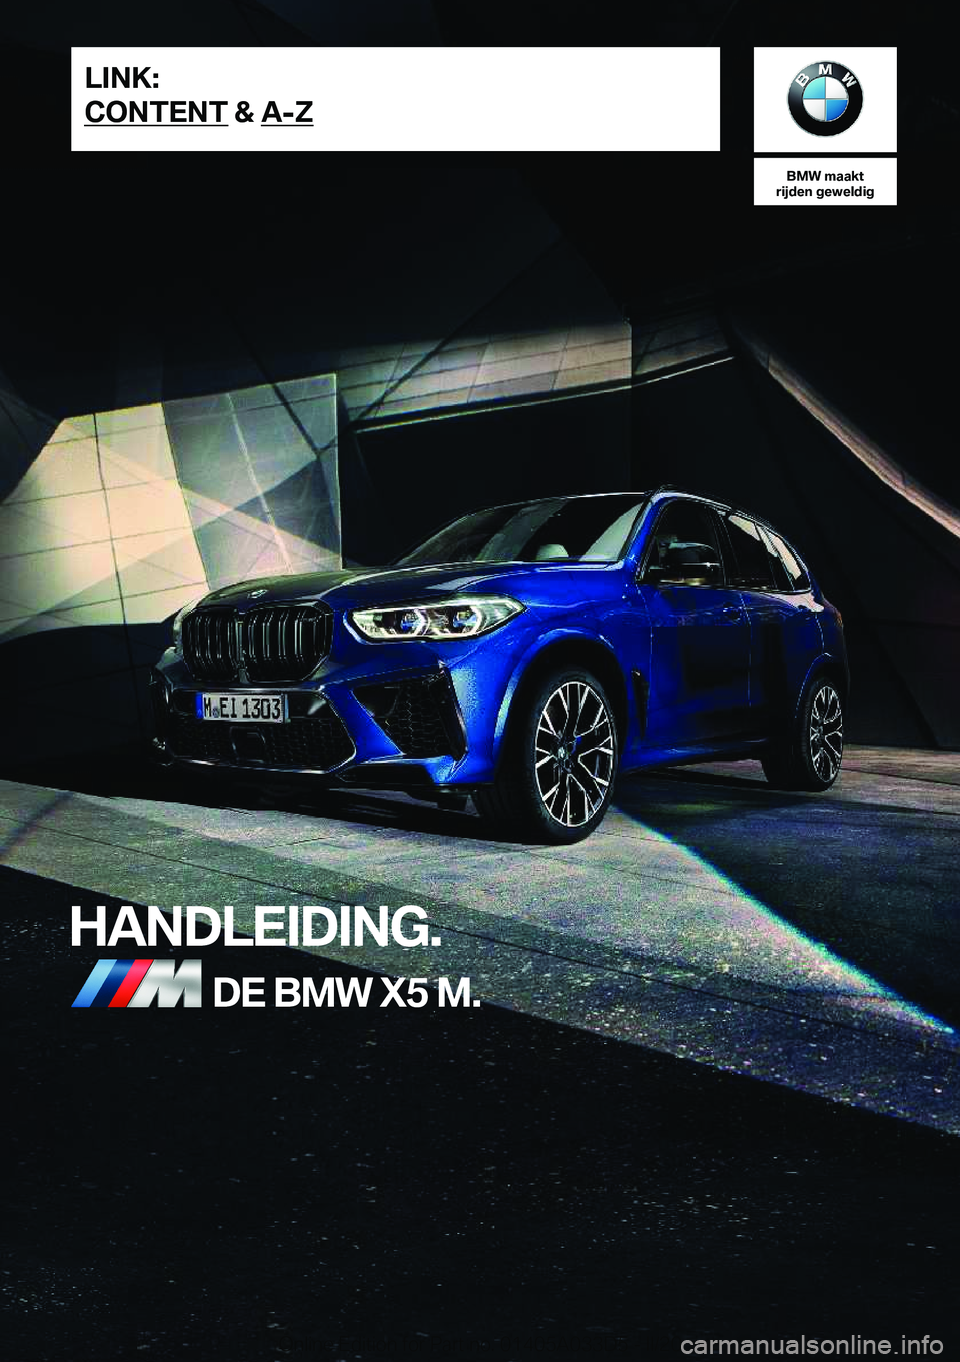 BMW X5 M 2020  Instructieboekjes (in Dutch) �B�M�W��m�a�a�k�t
�r�i�j�d�e�n��g�e�w�e�l�d�i�g
�H�A�N�D�L�E�I�D�I�N�G�.�D�E��B�M�W��X�5��M�.�L�I�N�K�:
�C�O�N�T�E�N�T��&��A�-�Z�O�n�l�i�n�e��E�d�i�t�i�o�n��f�o�r��P�a�r�t��n�o�.��0�1�4�0�